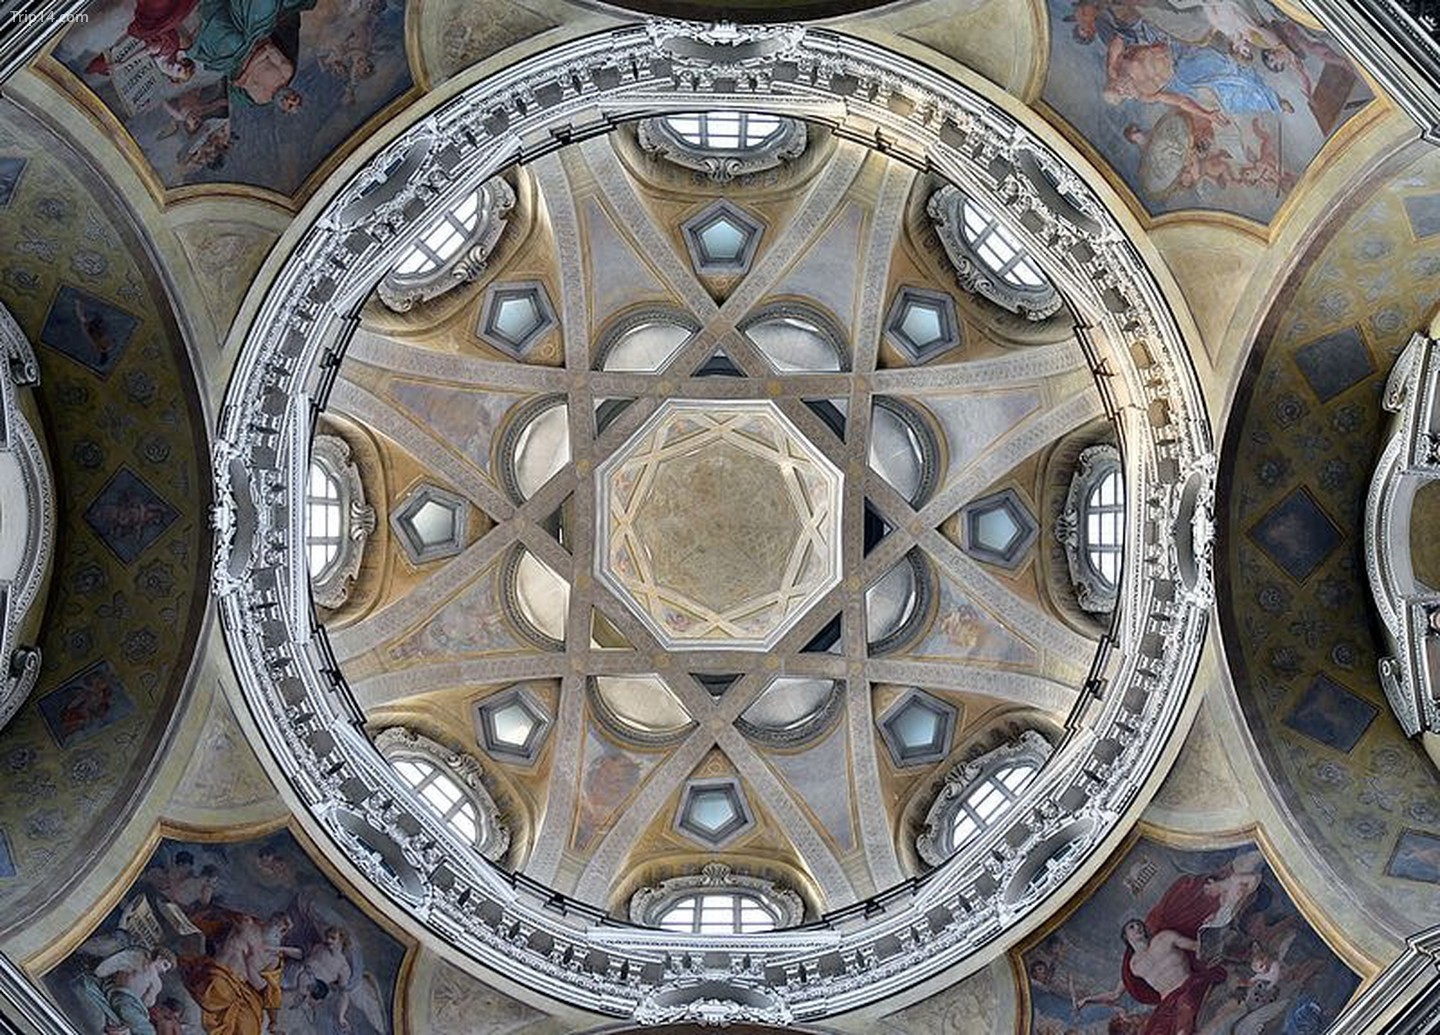  Nội thất mái vòm Chiesa di San Lorenzo   |   WikiCommons 